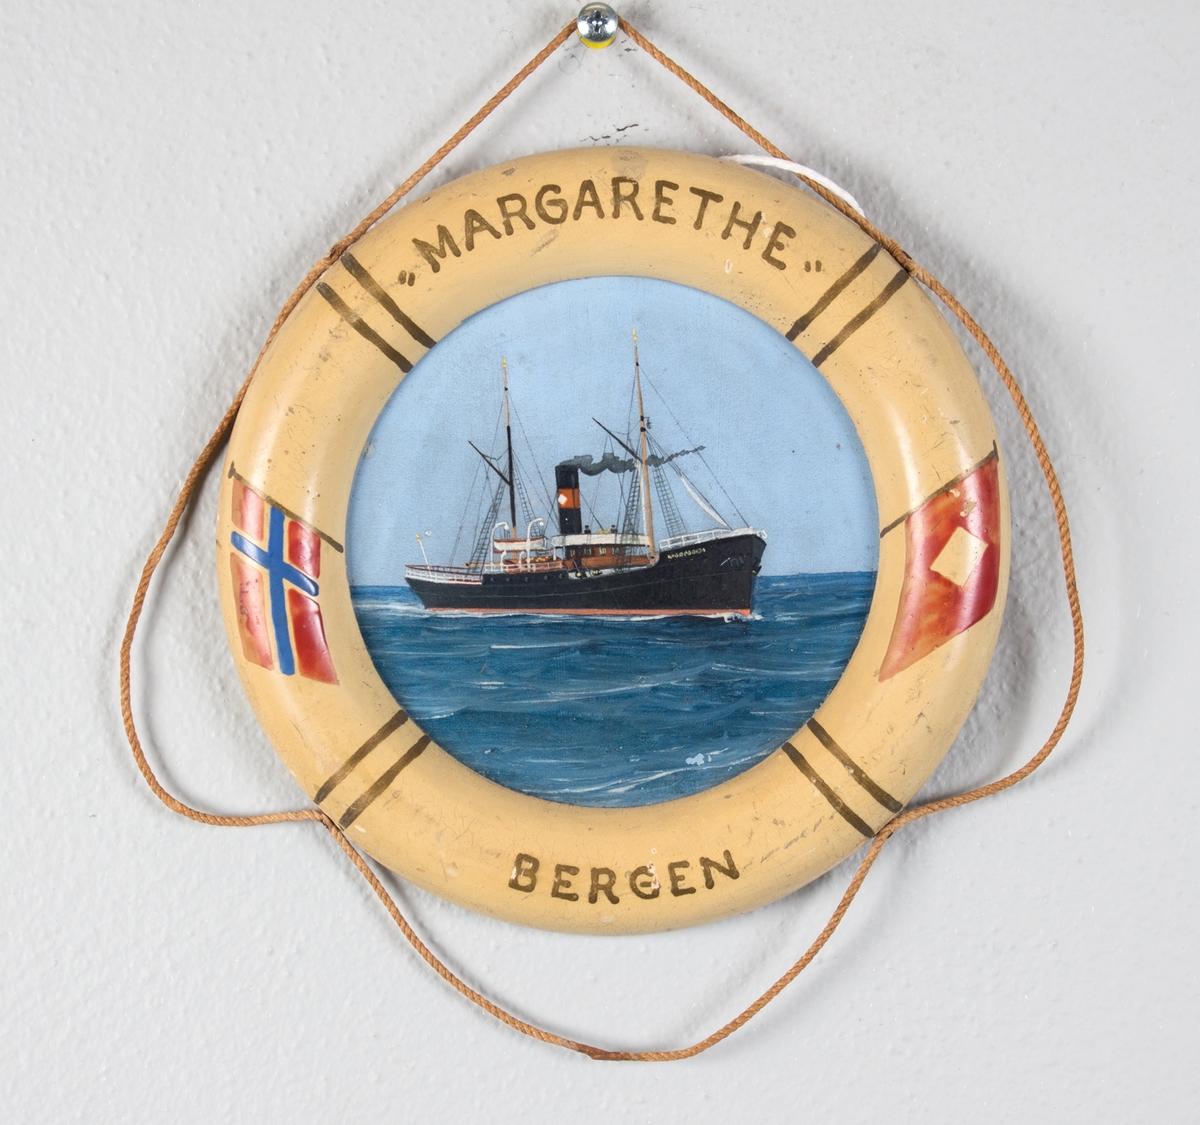 Skipsportrett av DS MARGARETHA på åpent hav. På bøyen er det malt norsk flagg og rederiflagget til R. H. Wesenberg.